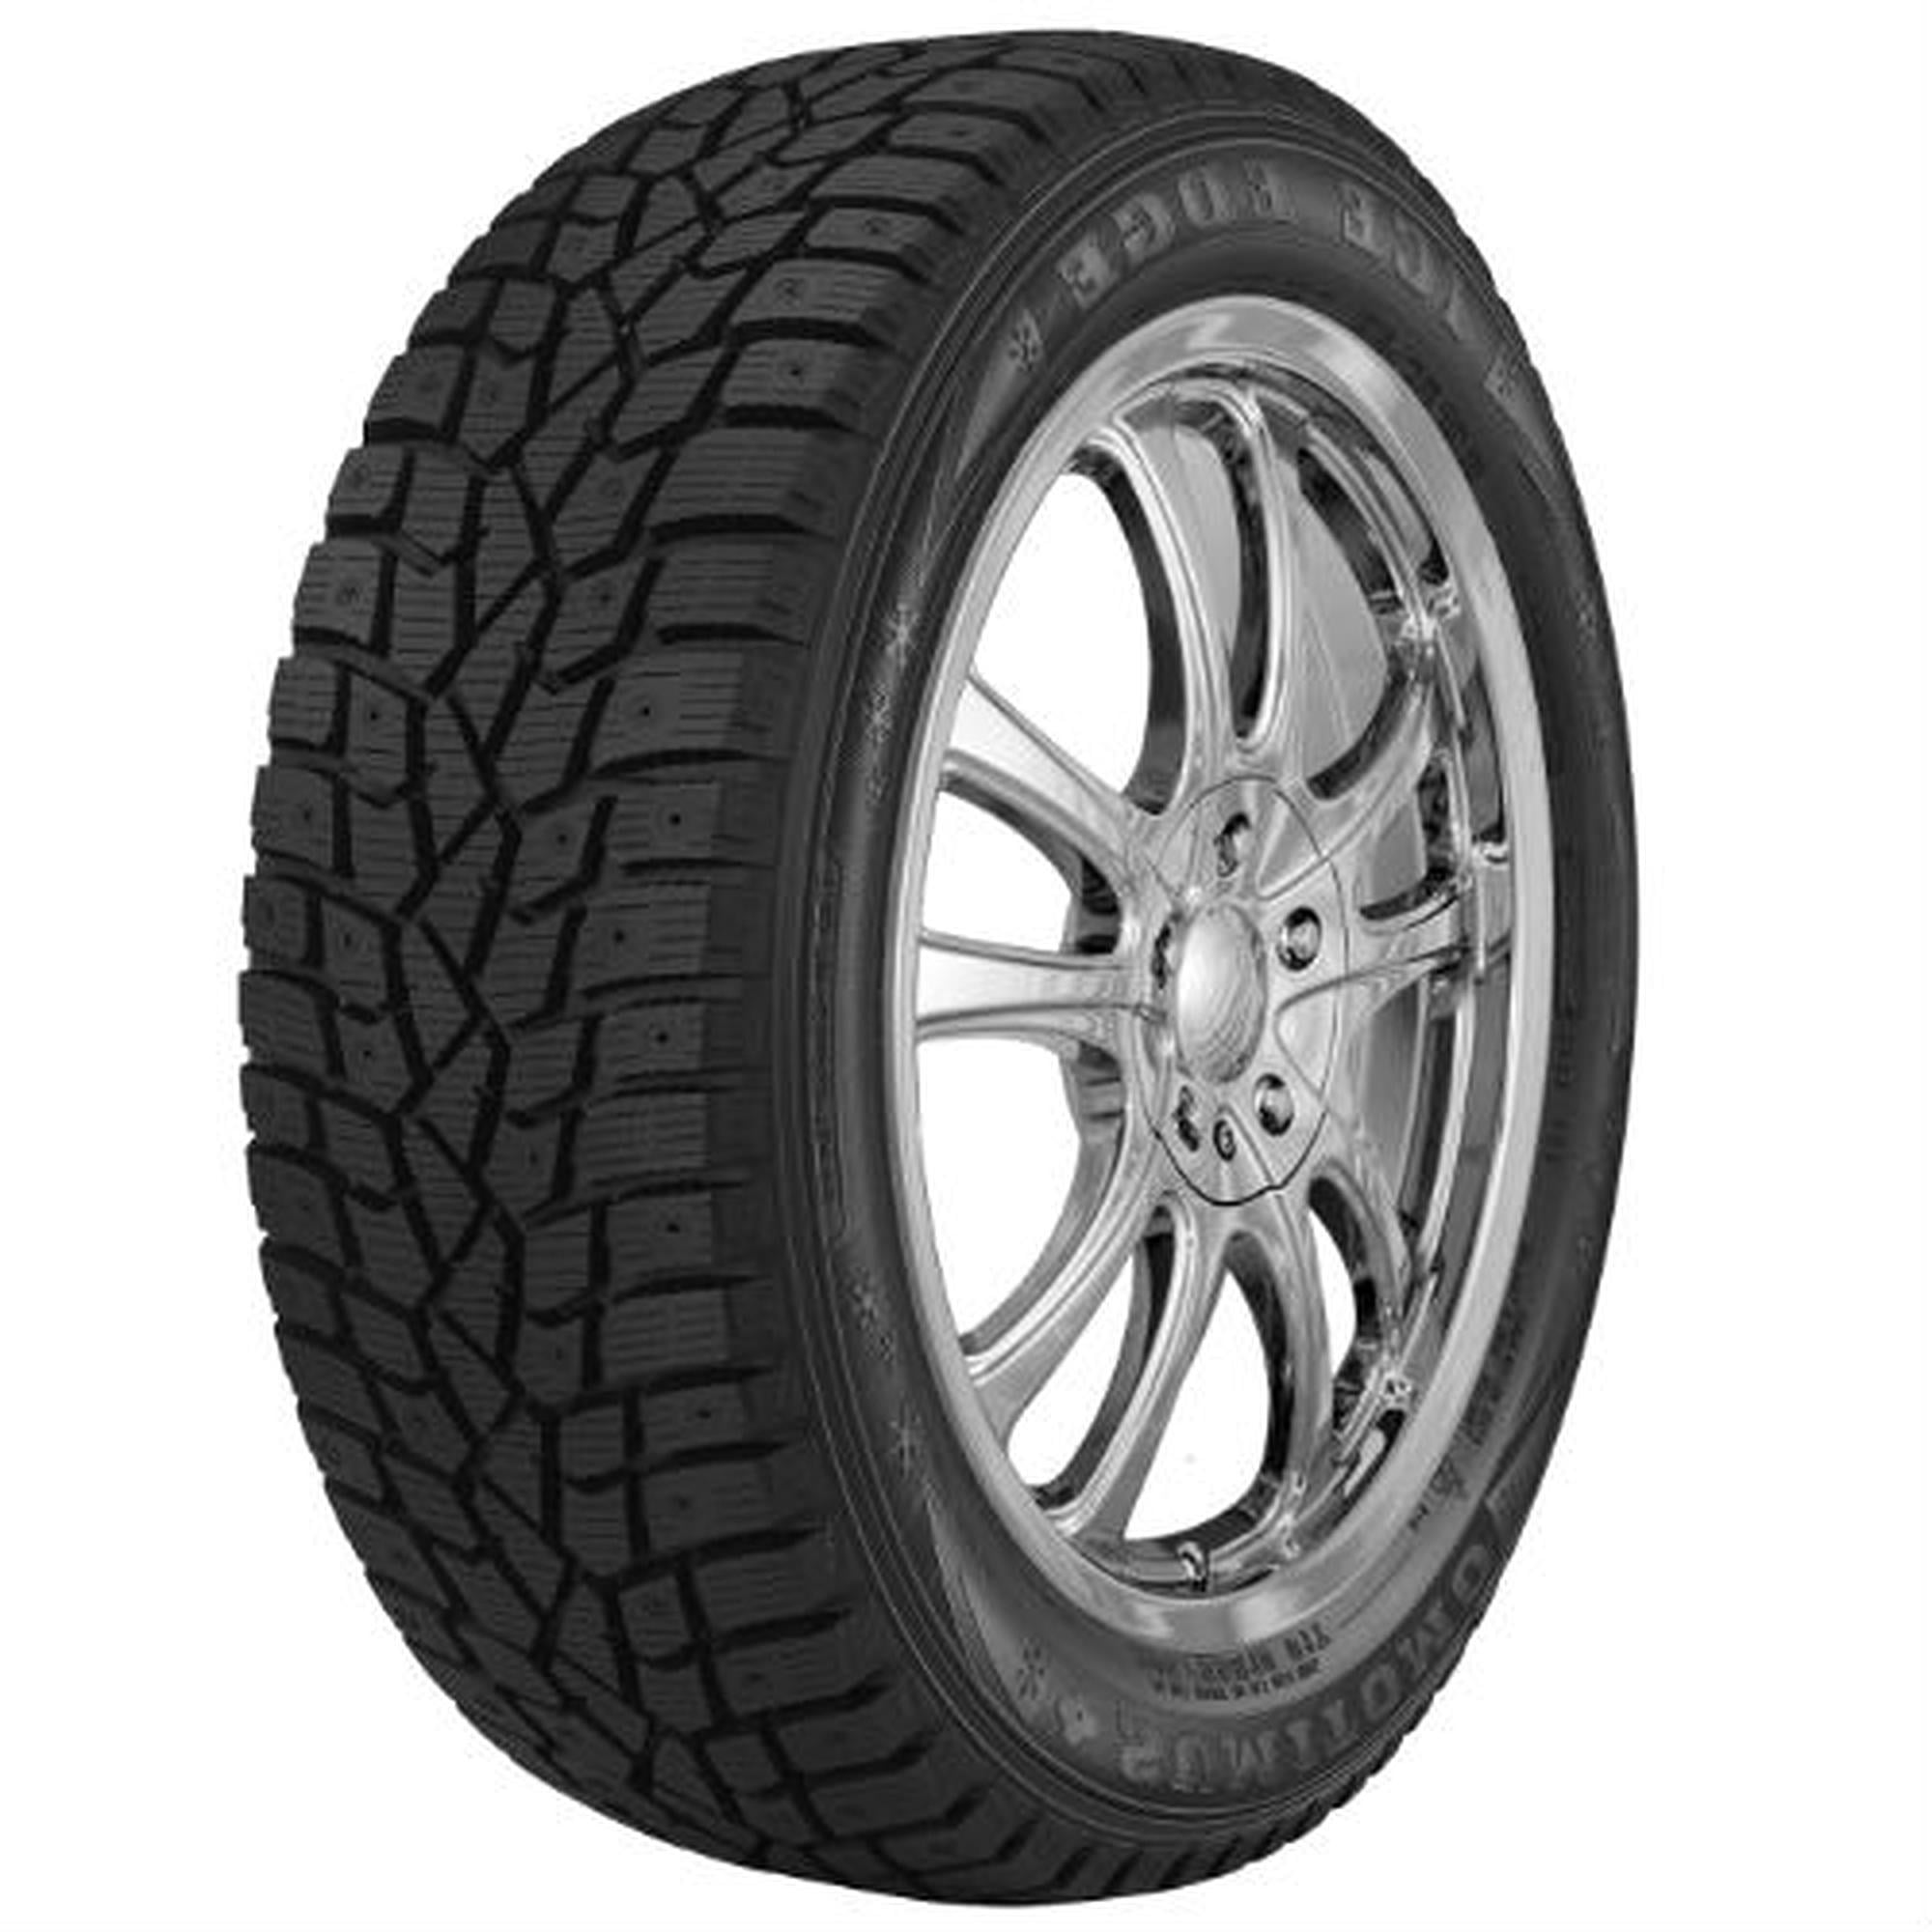 Snow 185/65R15 Tire Dunlop Maxx (Studless) 88T Winter